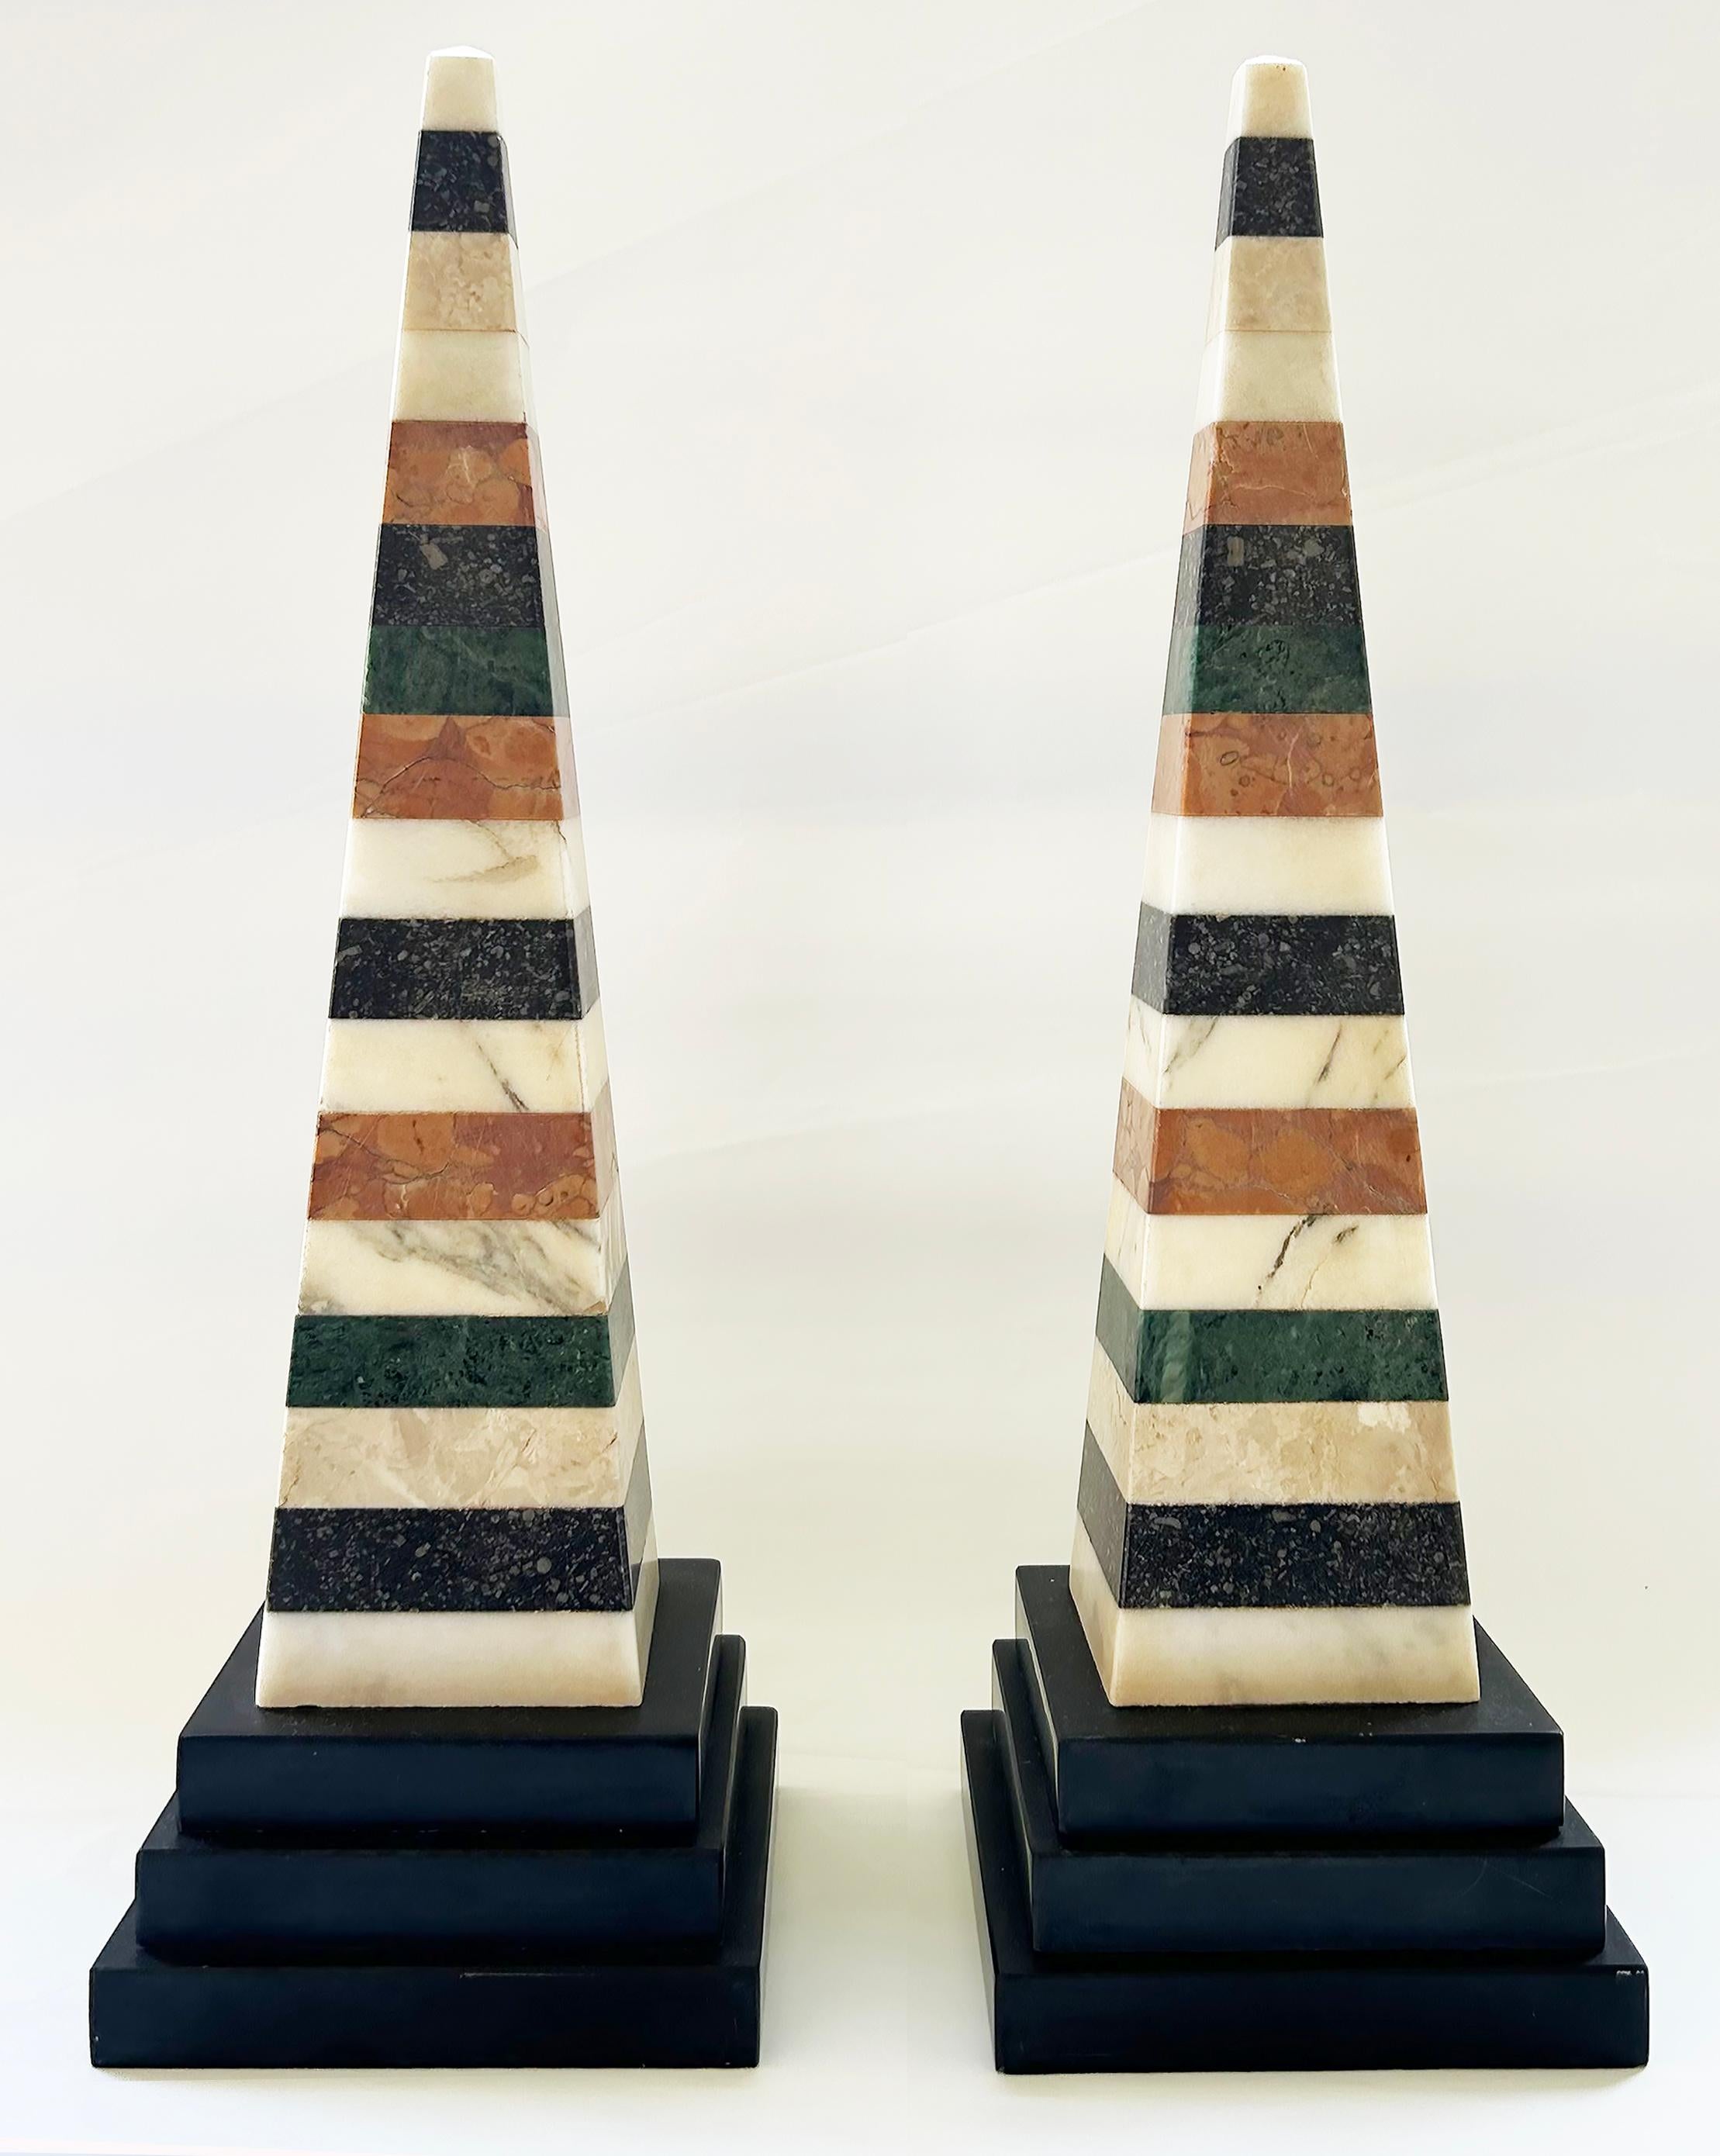 Grand Tour Italienisches Muster aus Marmor, Paar schöne Obelisken, Grand Tour

Zum Verkauf angeboten wird ein wundervolles Paar italienischer Obelisken aus der Zeit der Grand Tour, die aus gestapelten Marmorstücken bestehen. Die Obelisken sind